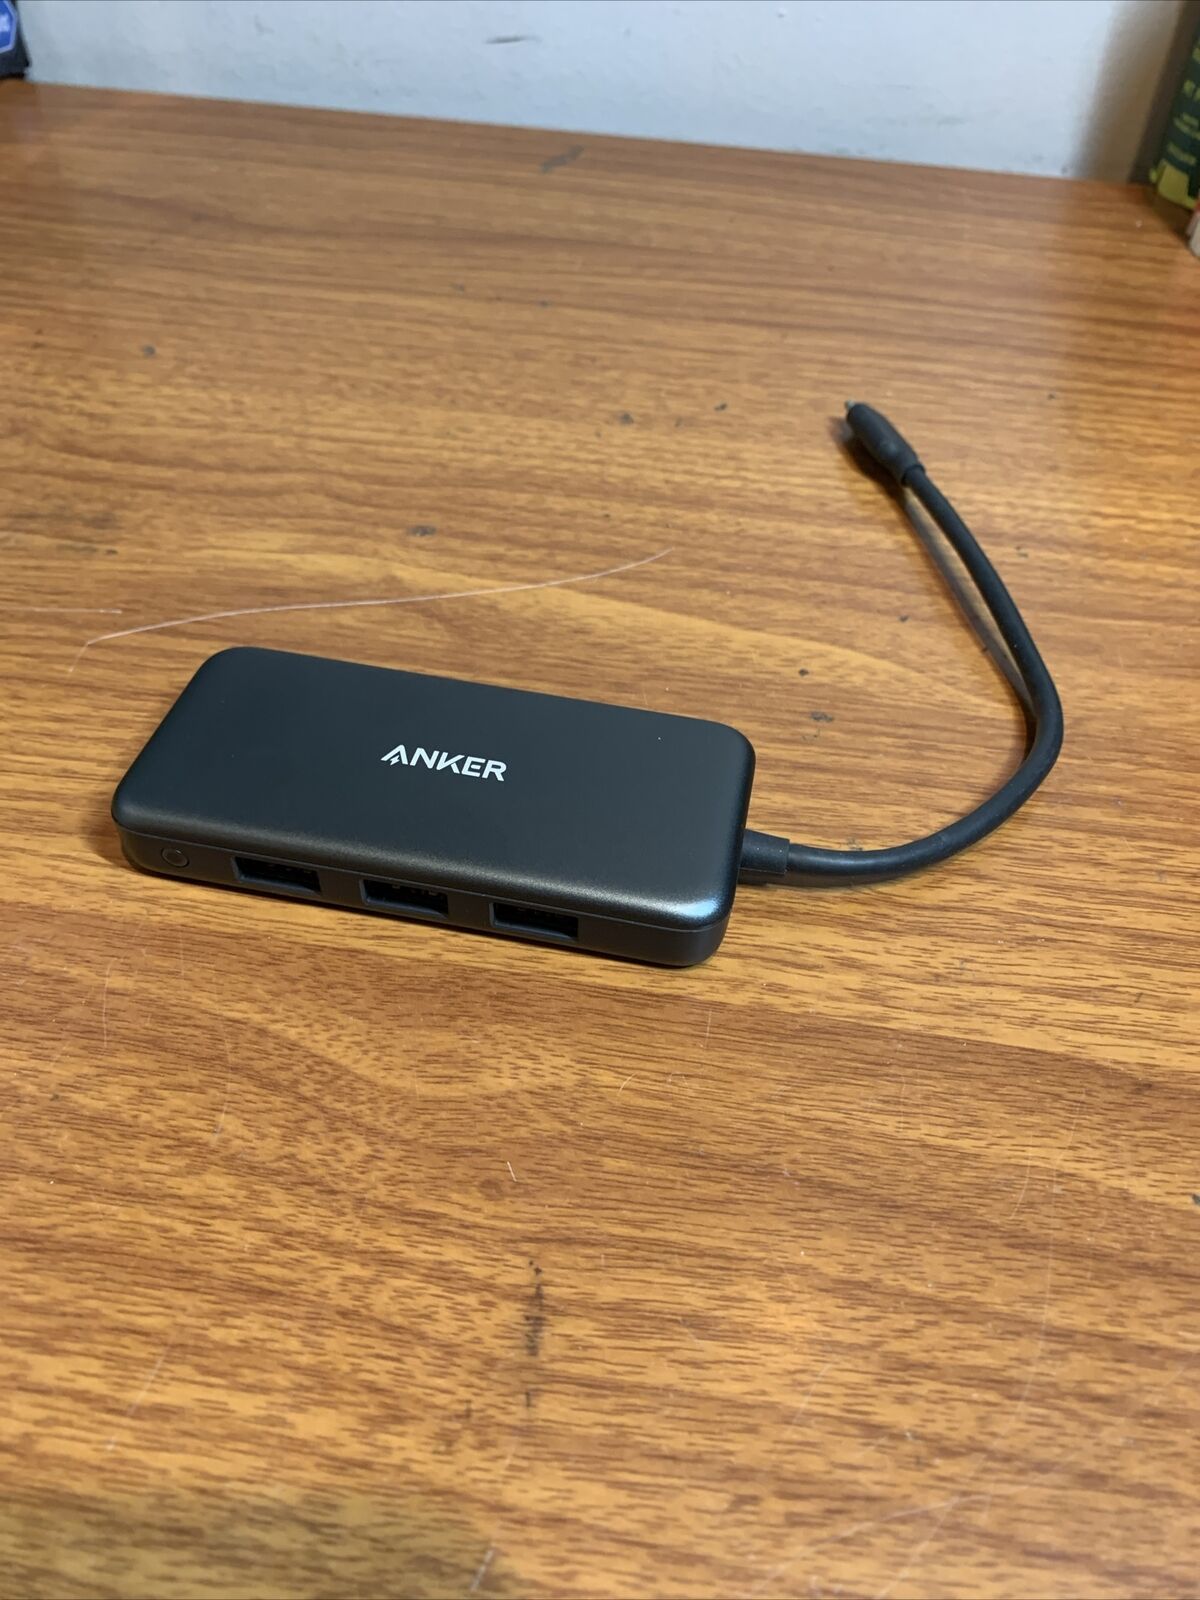 Anker 4-in-1 Premium USB-C Hub